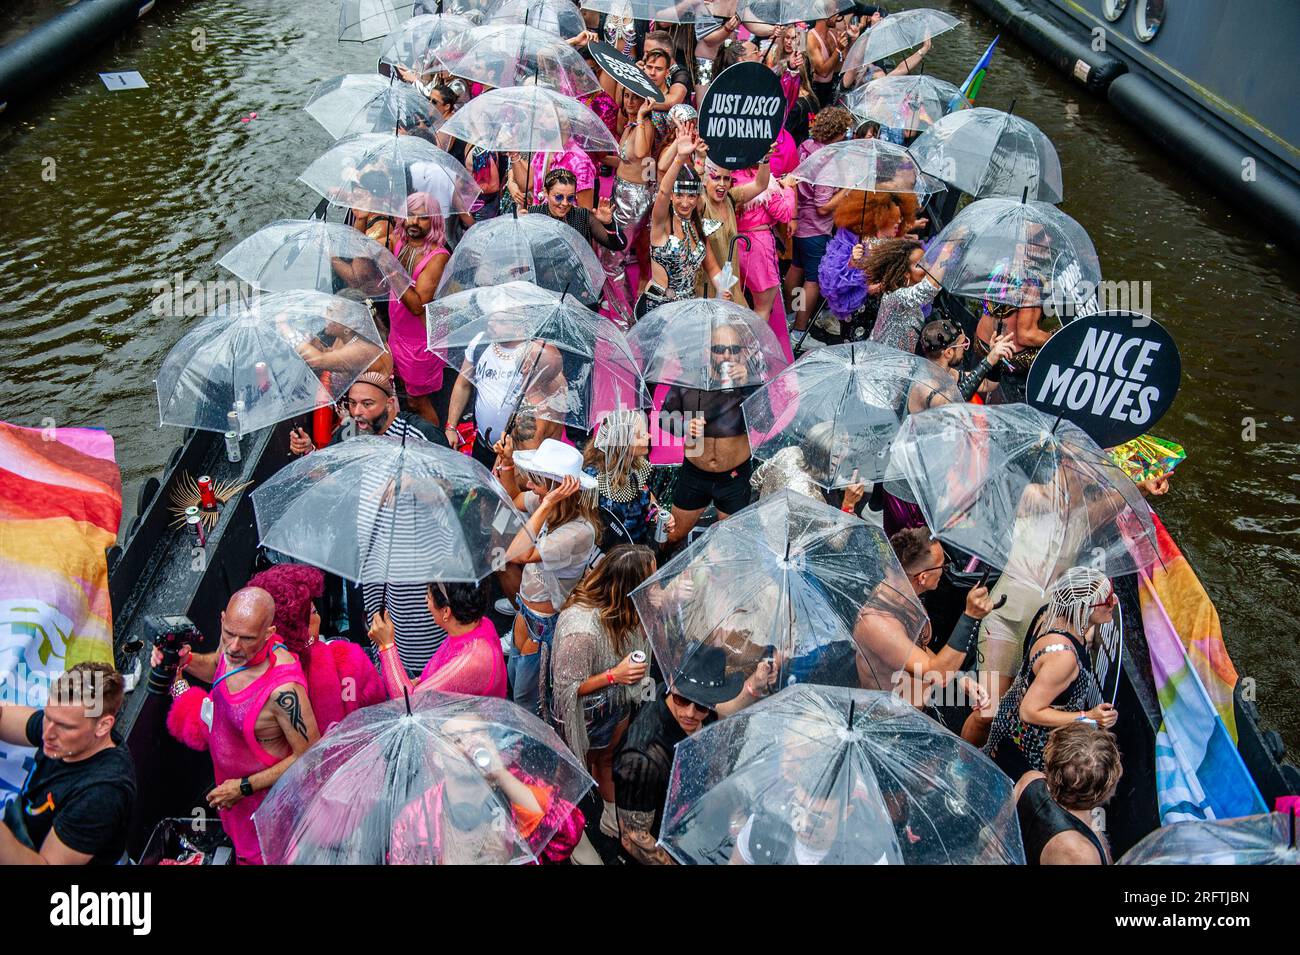 200 ombrelli immagini e fotografie stock ad alta risoluzione - Alamy